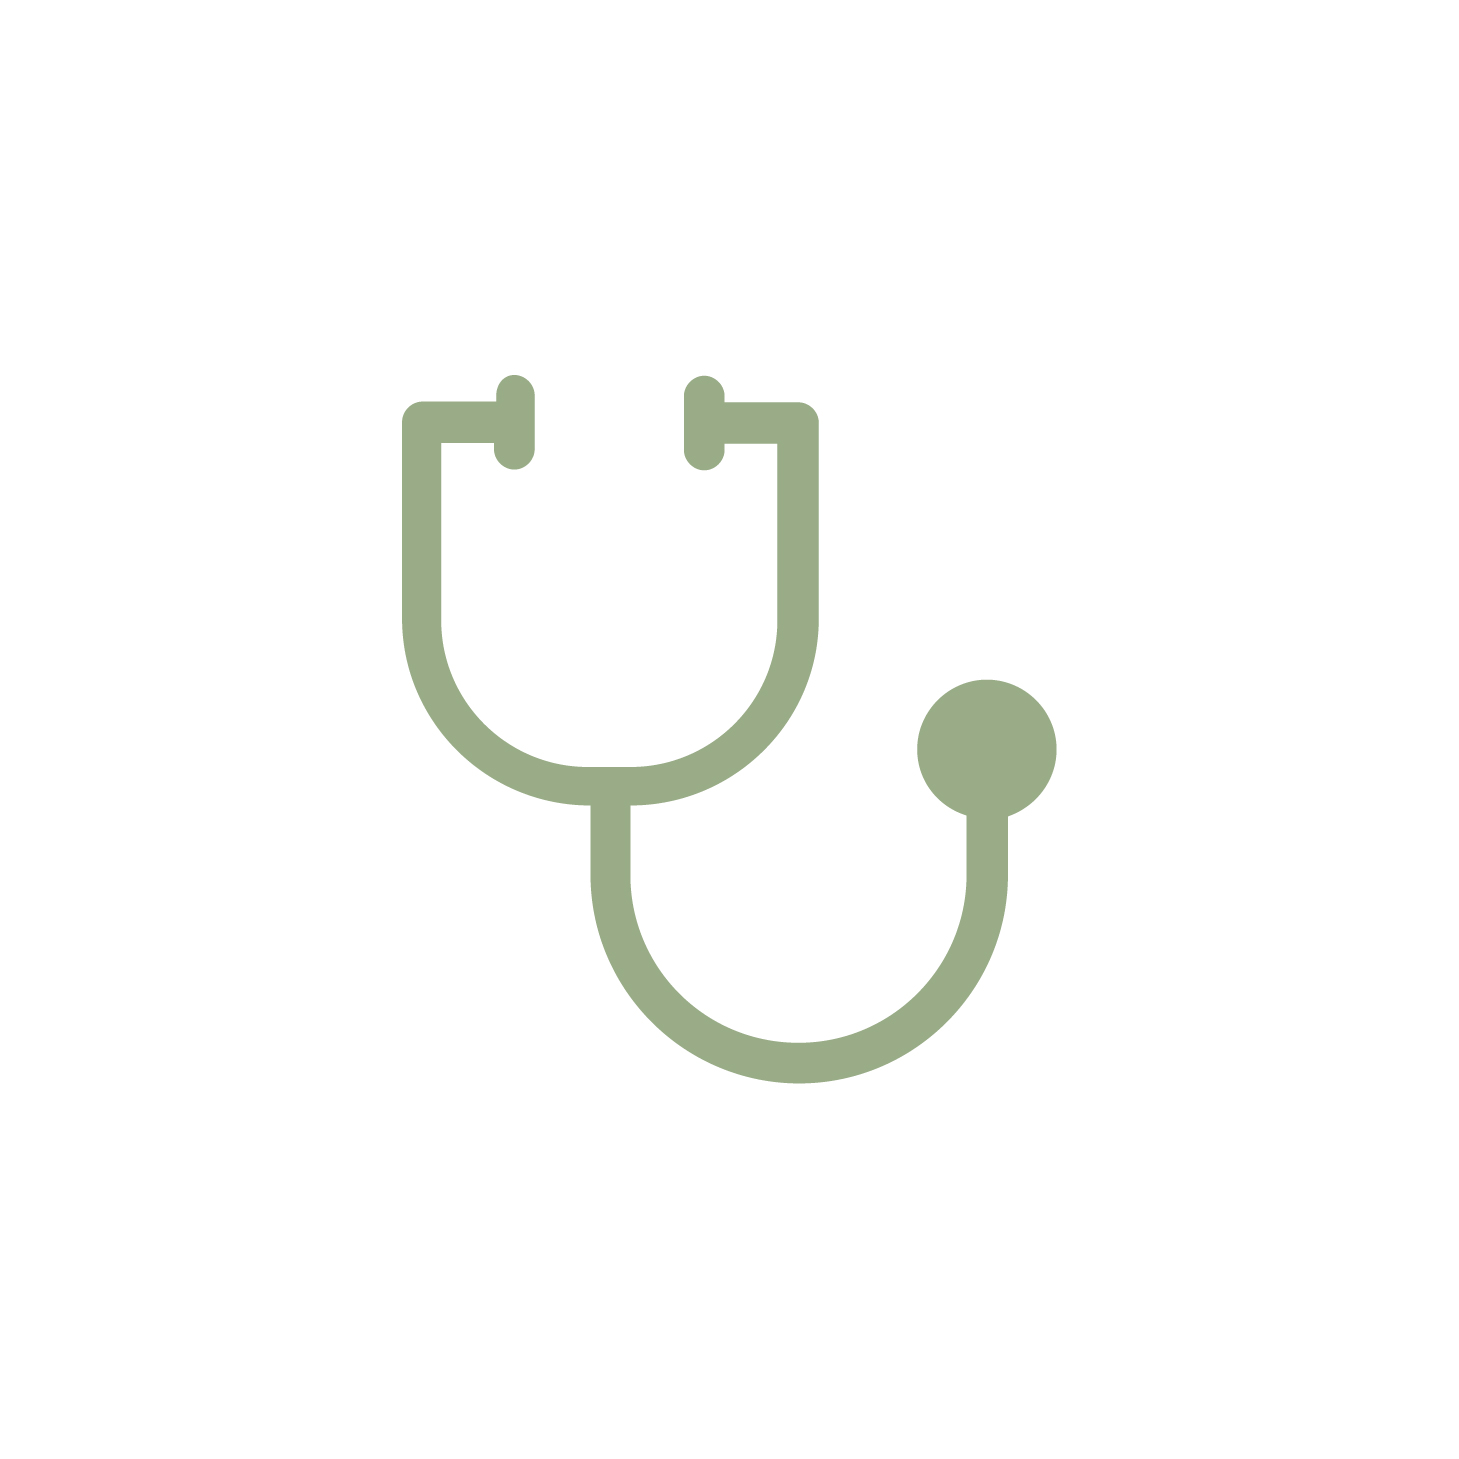 Icono que representa los servicios médicos